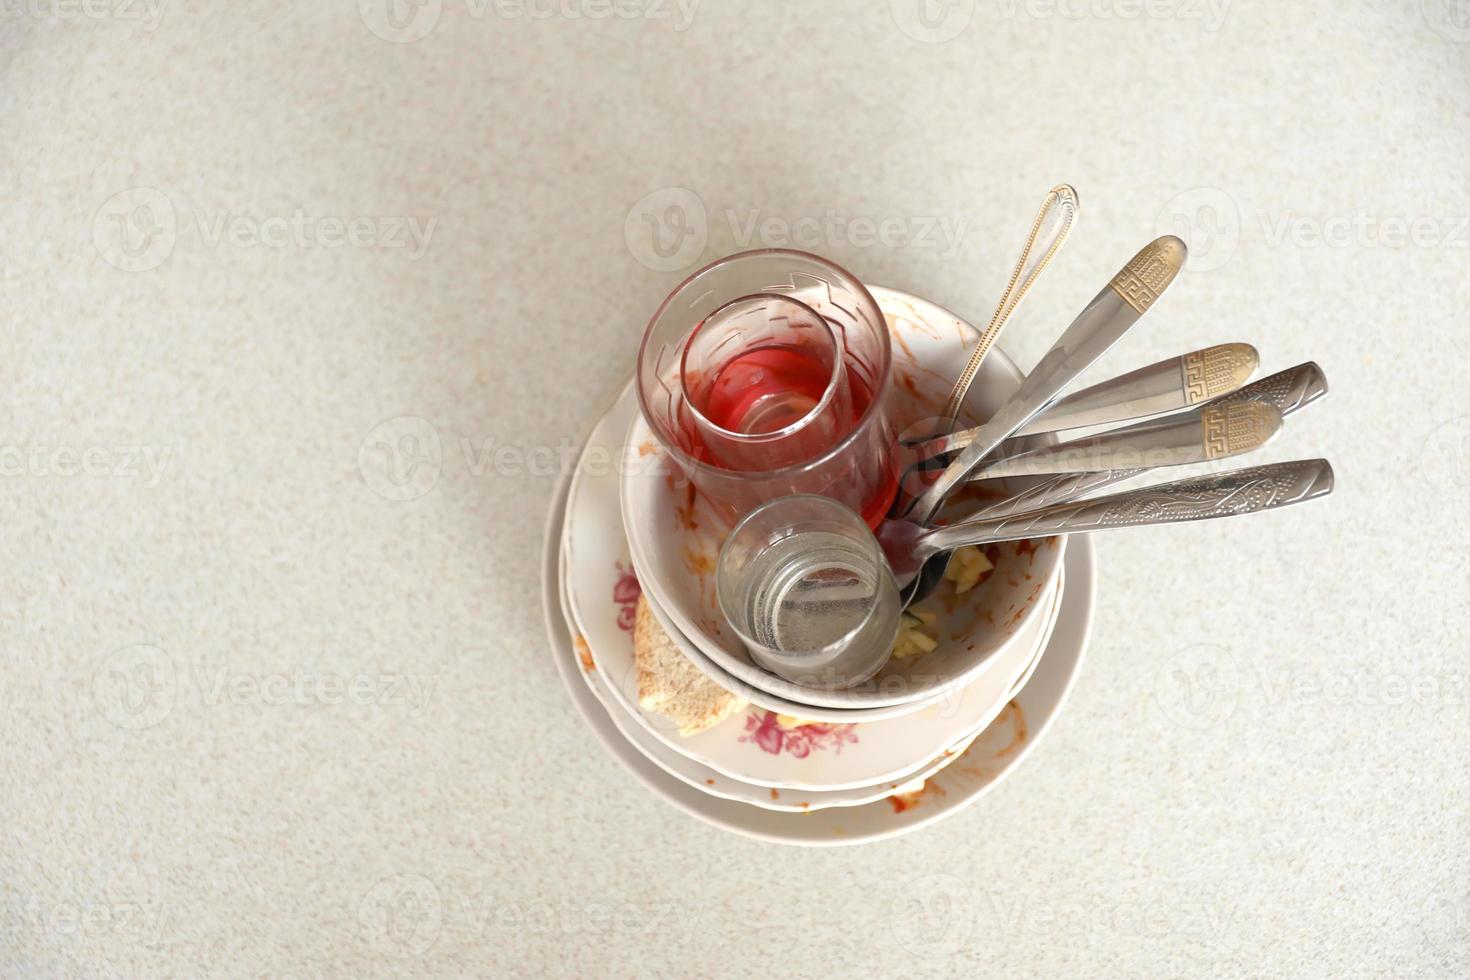 pile de vaisselle sale avec des restes de nourriture sur la table après le repas. concept de fin de banquet. vaisselle non lavée photo